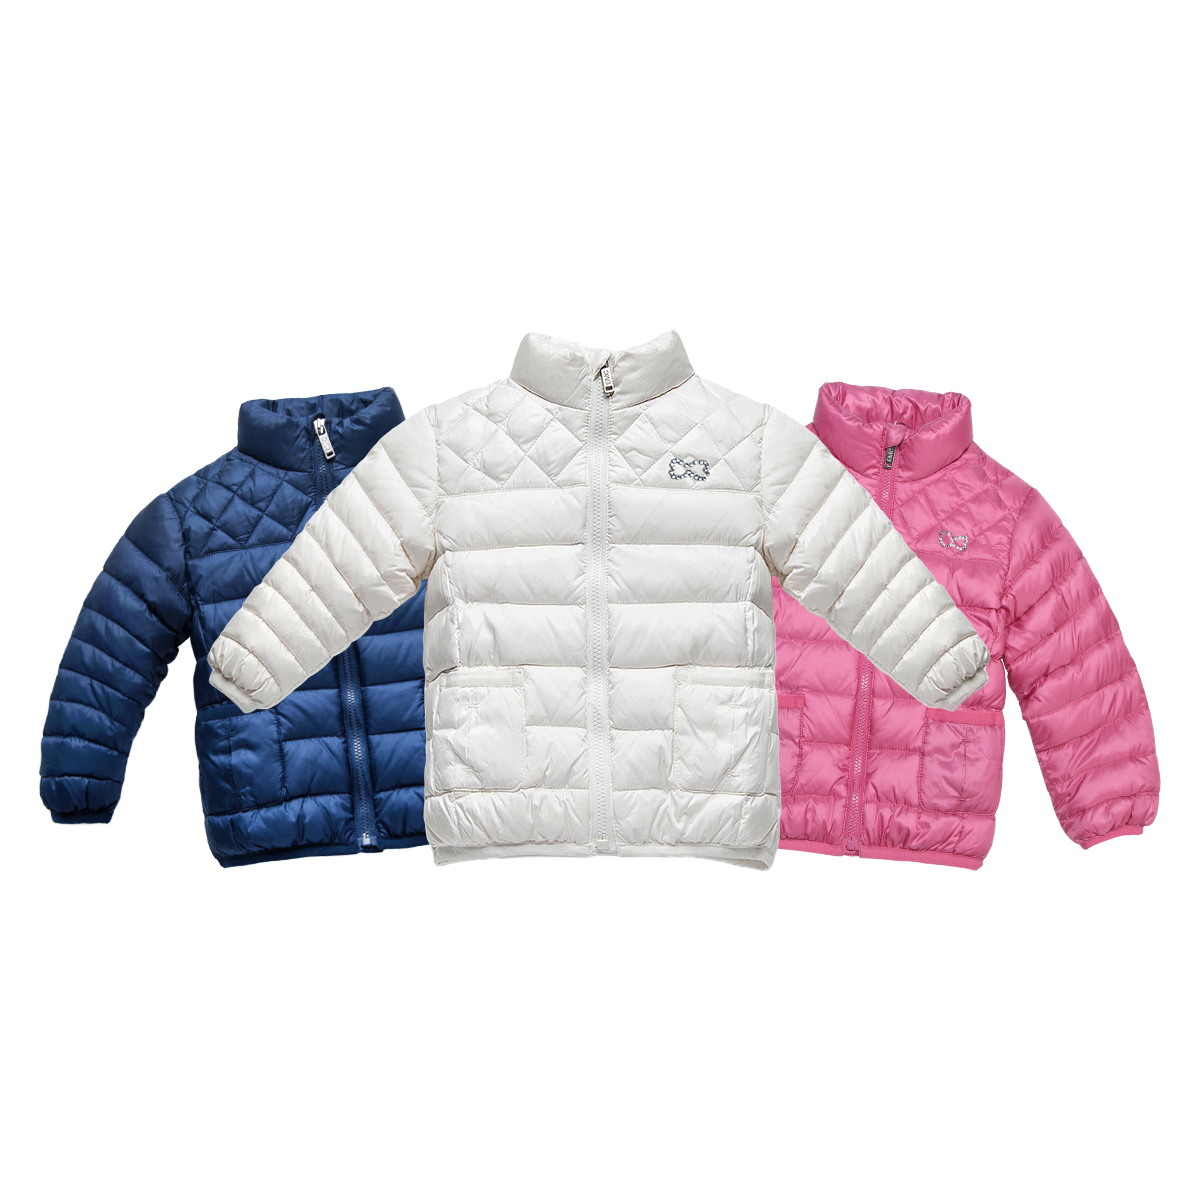 AV1005 Personalized Newborn Baby Jacket&outwear for Sale